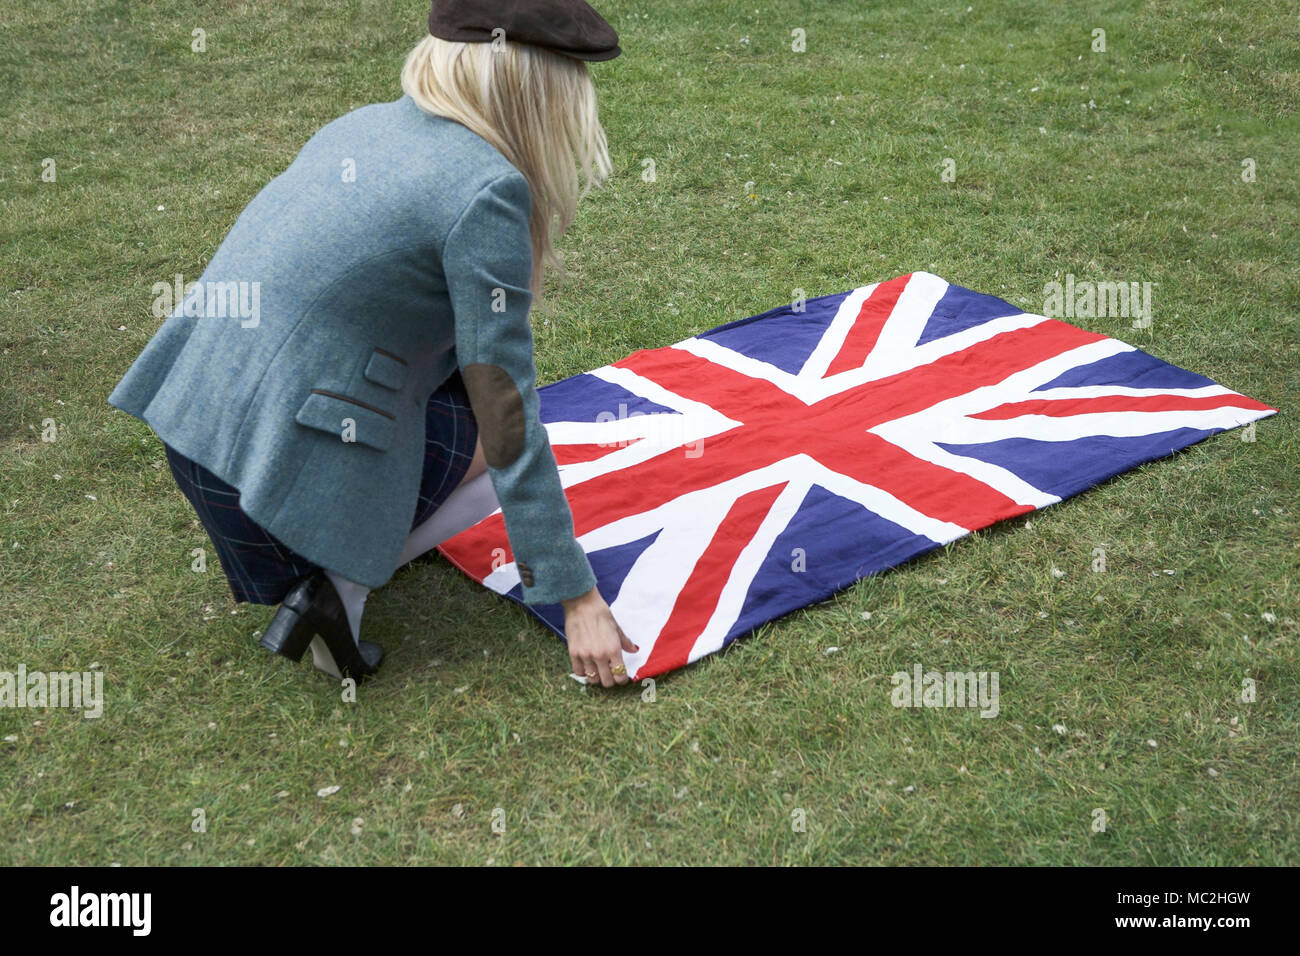 Caractère britannique. Symboles : Union Jack britannique serviette. Pays britannique vêtements : veste en tweed. La démocratie britannique. Brexit Banque D'Images